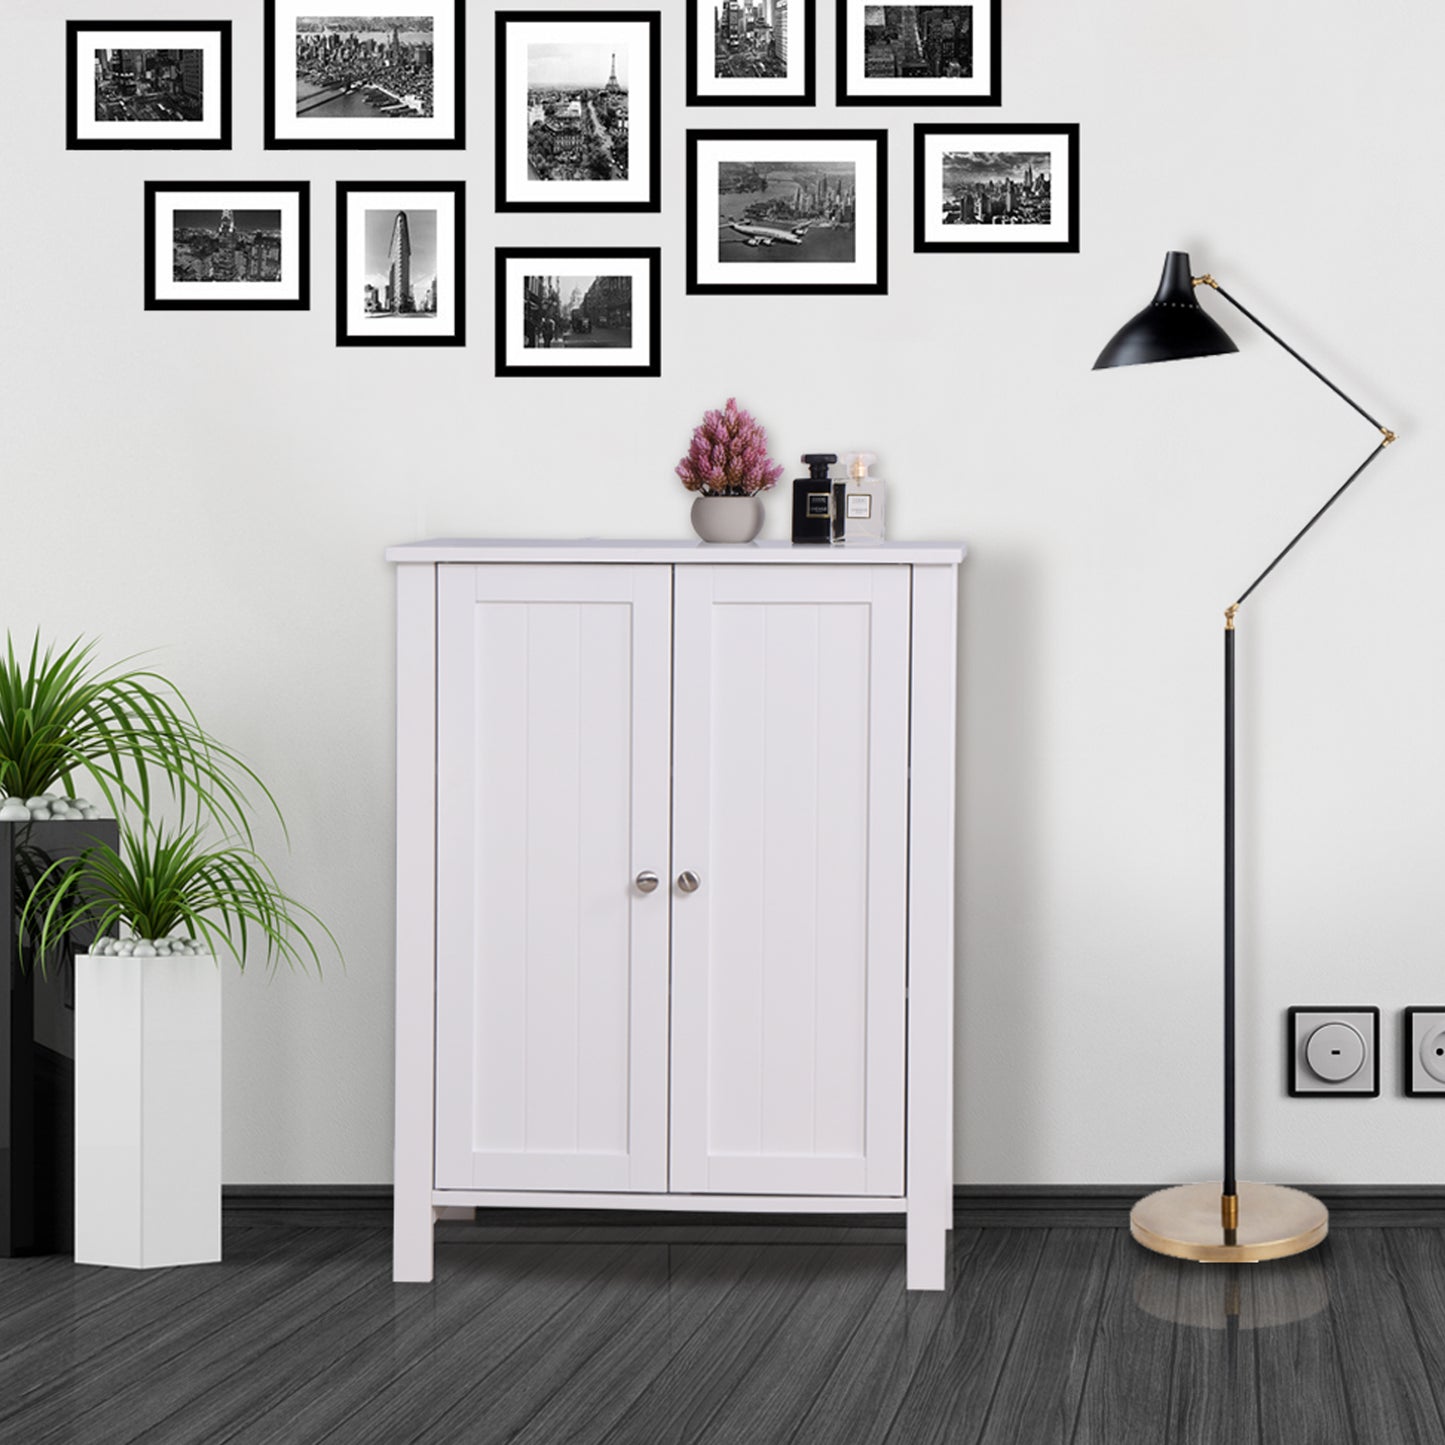 Bathroom Floor Storage Cabinet with Double Door Adjustable Shelf -White